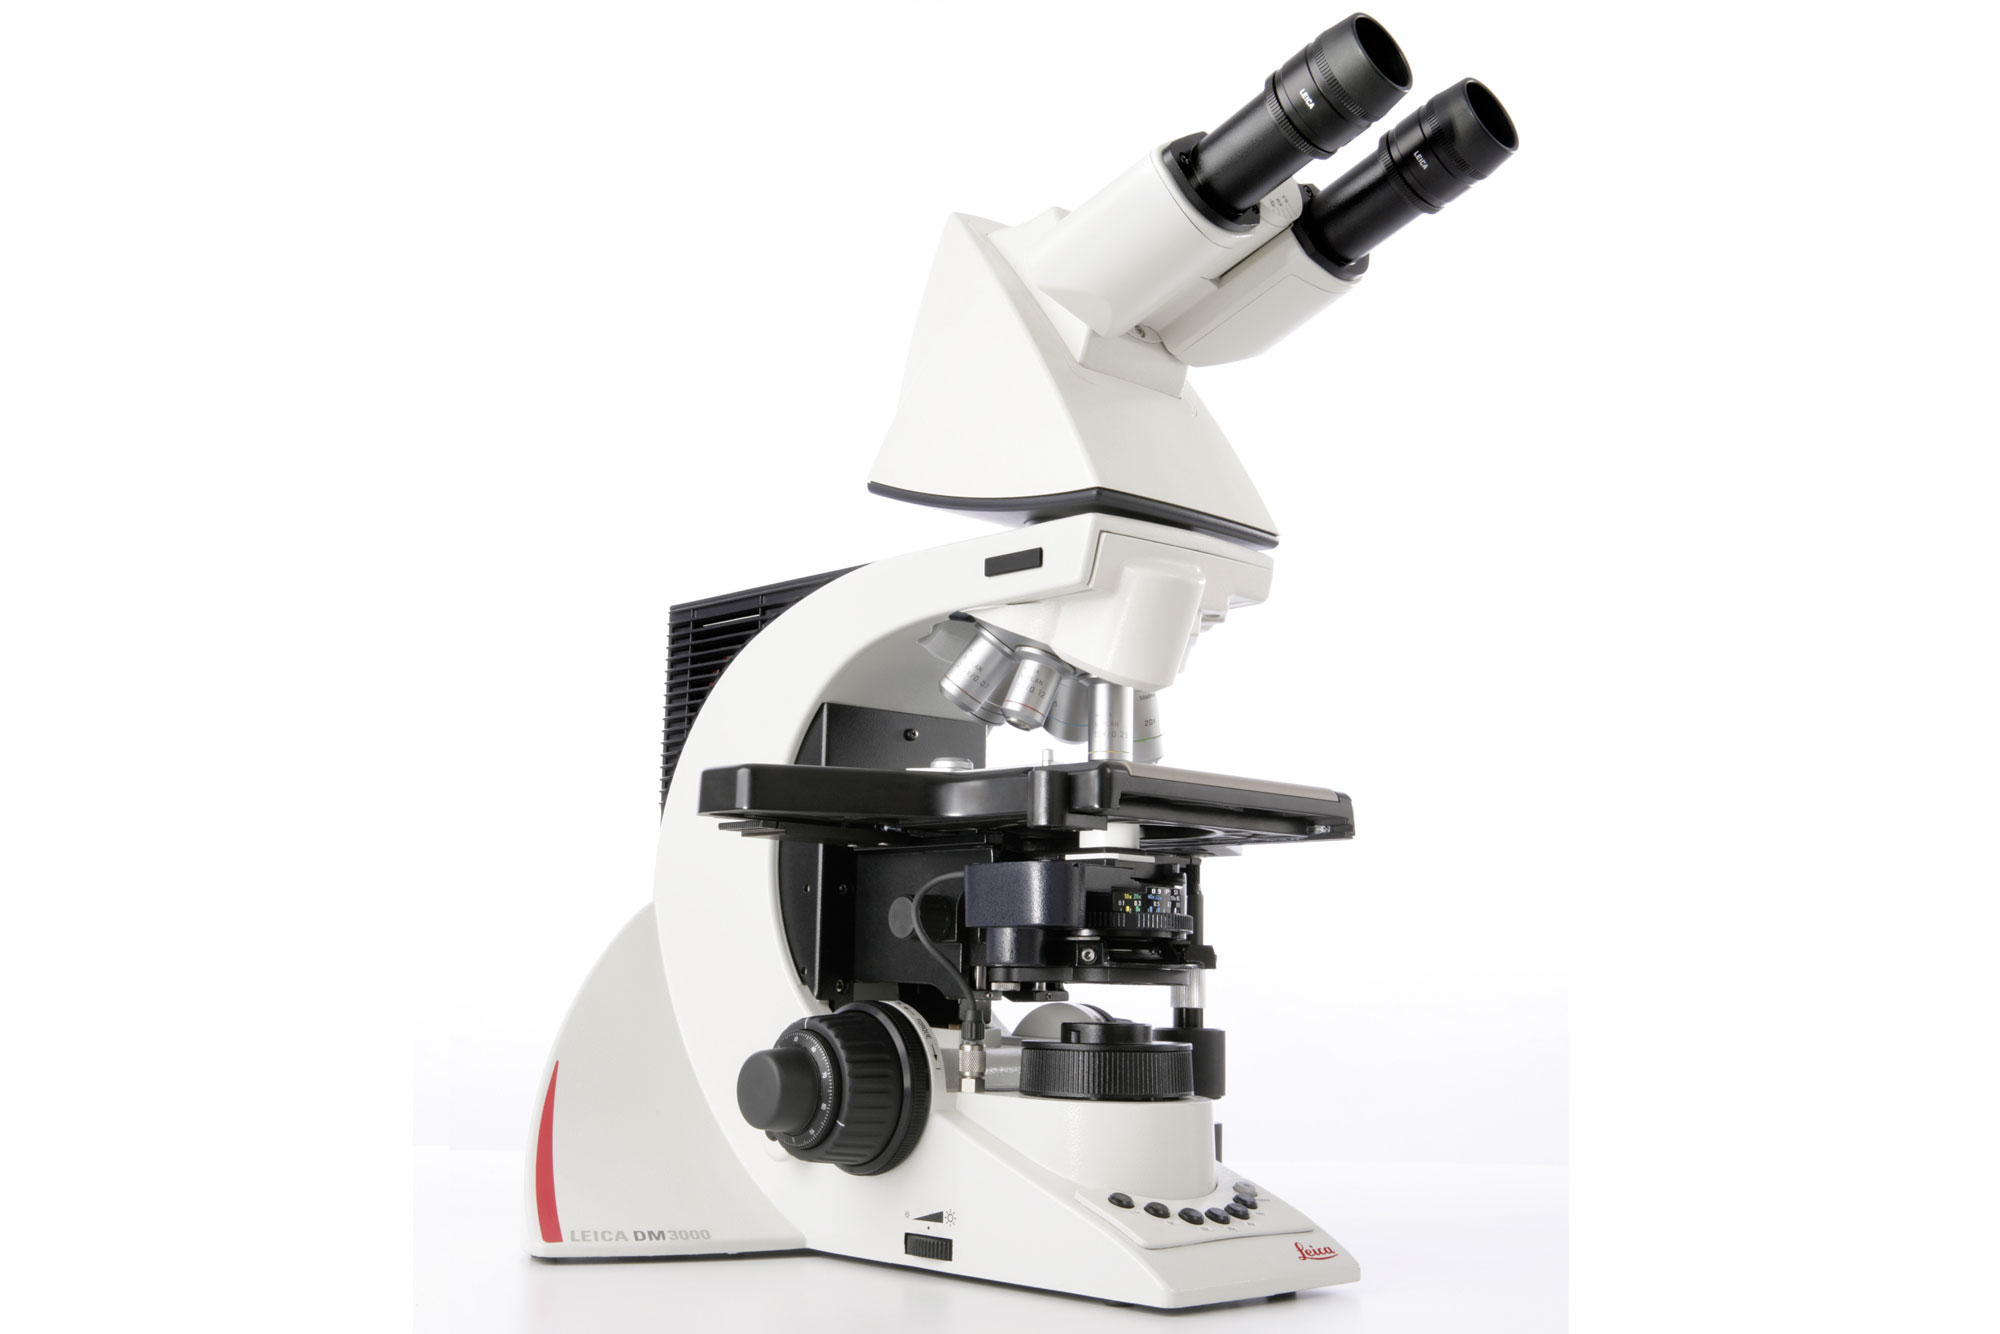 Le microscope particulièrement ergonomique Leica DM3000 augmente les flux de travaux de cytologie et pathologie grâce à son automatisation intelligente.